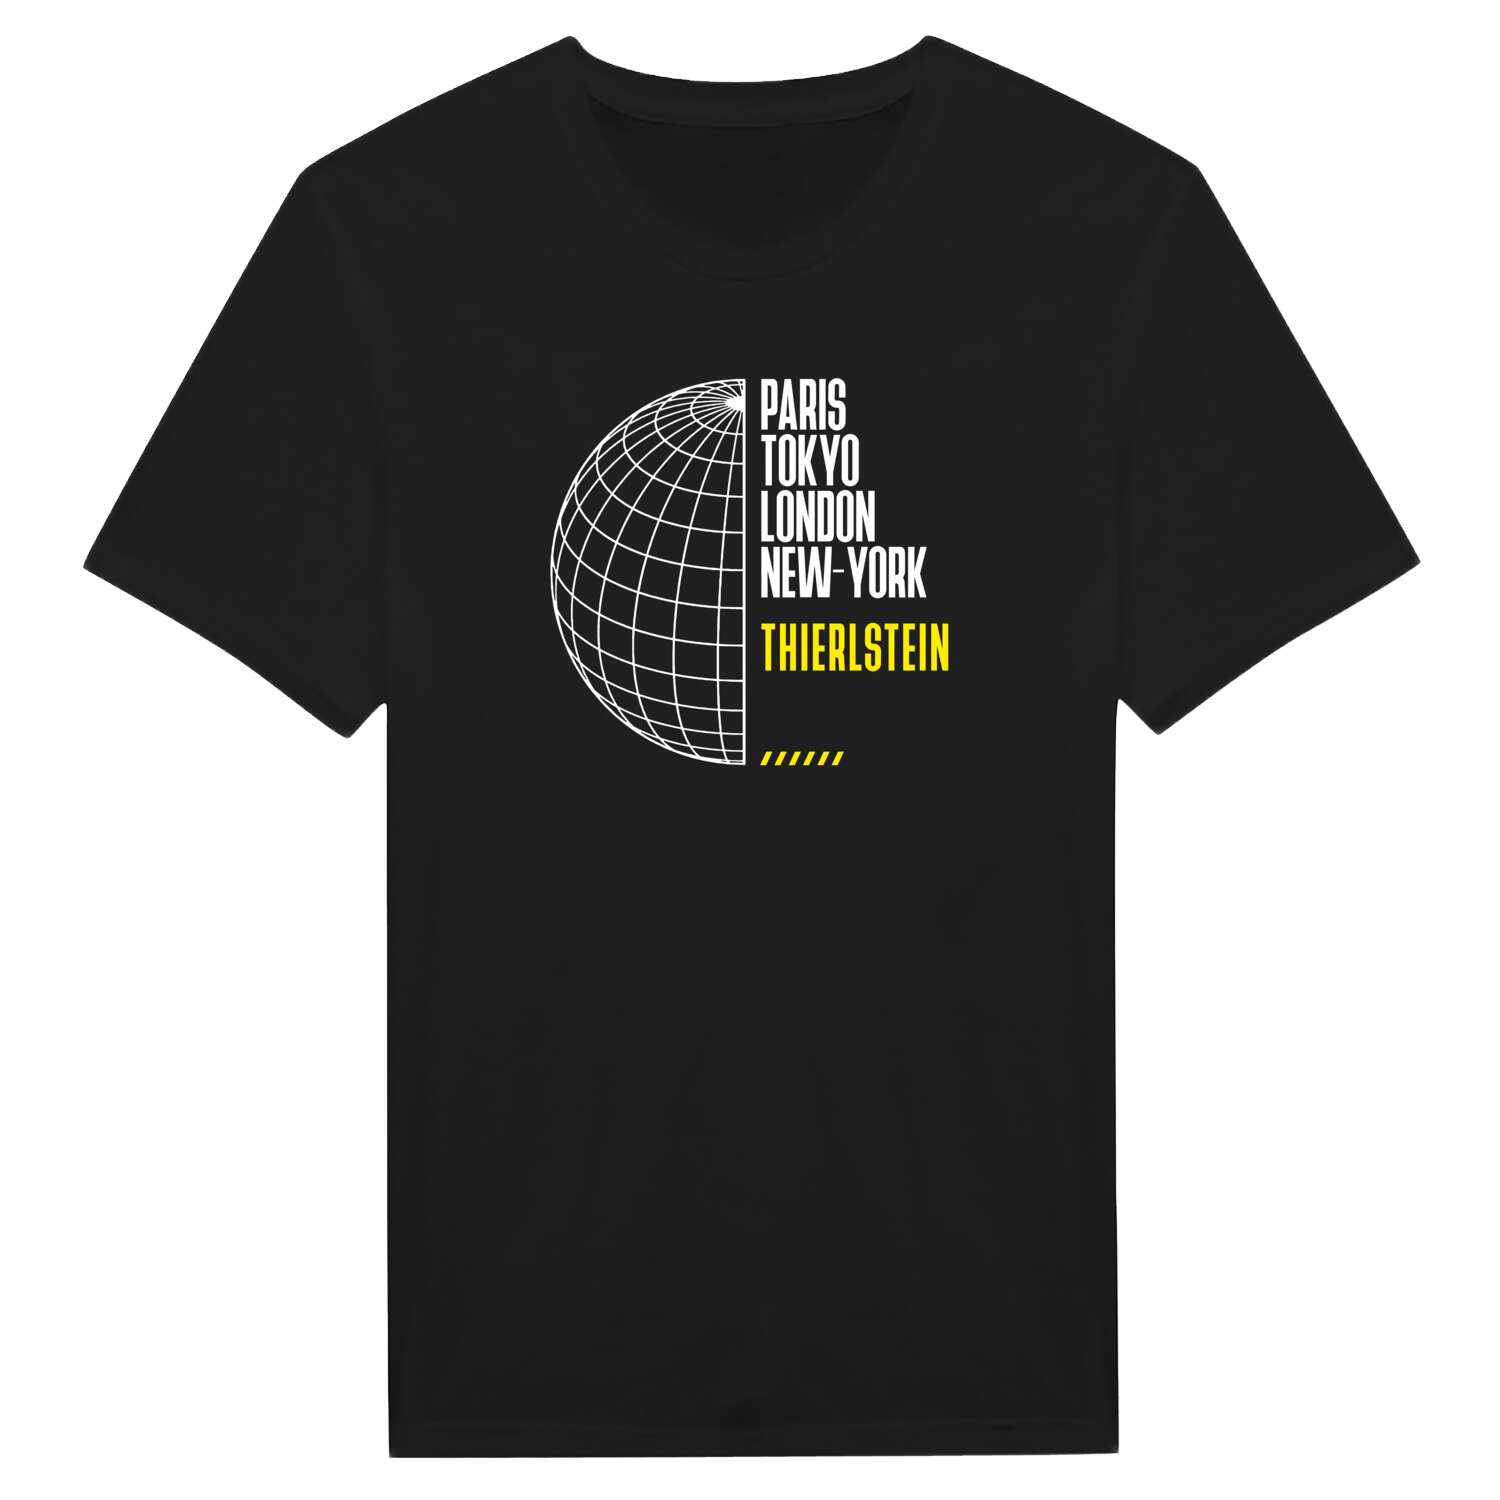 Thierlstein T-Shirt »Paris Tokyo London«